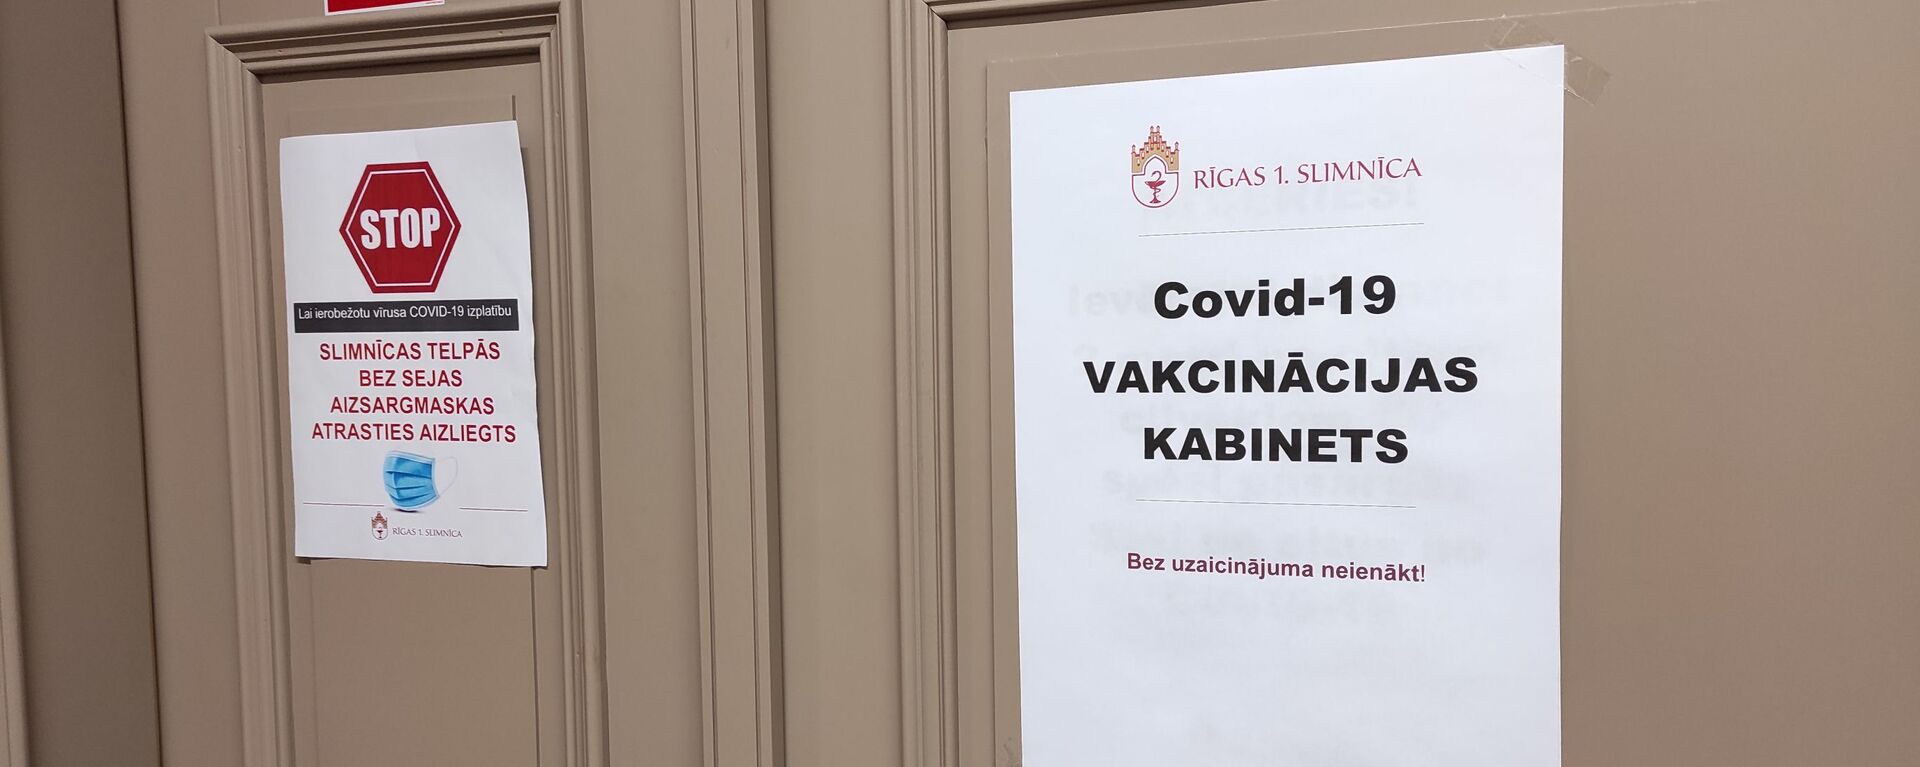 Кабинет вакцинации в Первой городской больнице Риги  - Sputnik Латвия, 1920, 09.02.2021